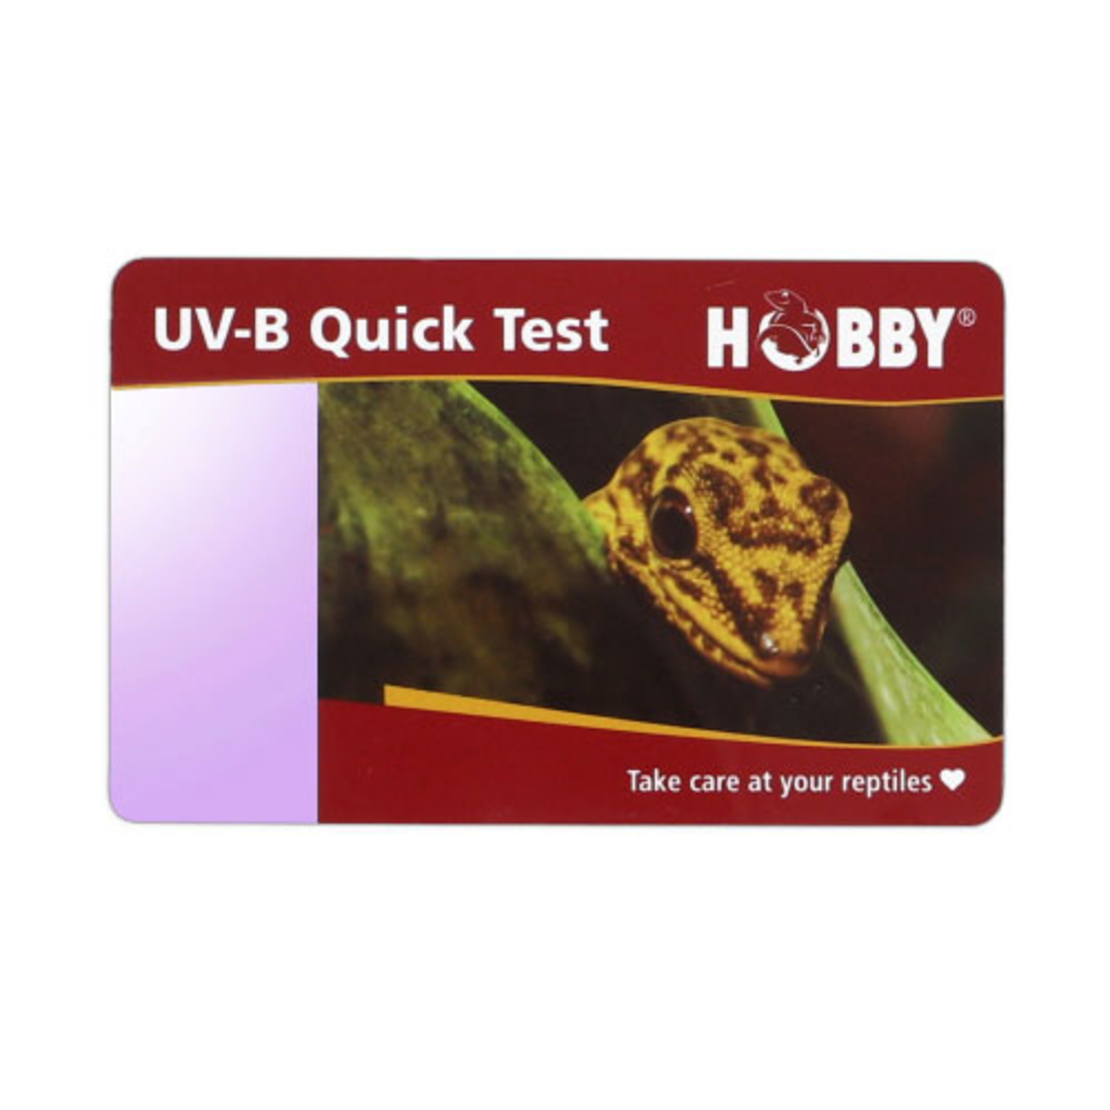 נייר לבדיקת רמת UVB שתי יח', הובי | UV-B Quick Test